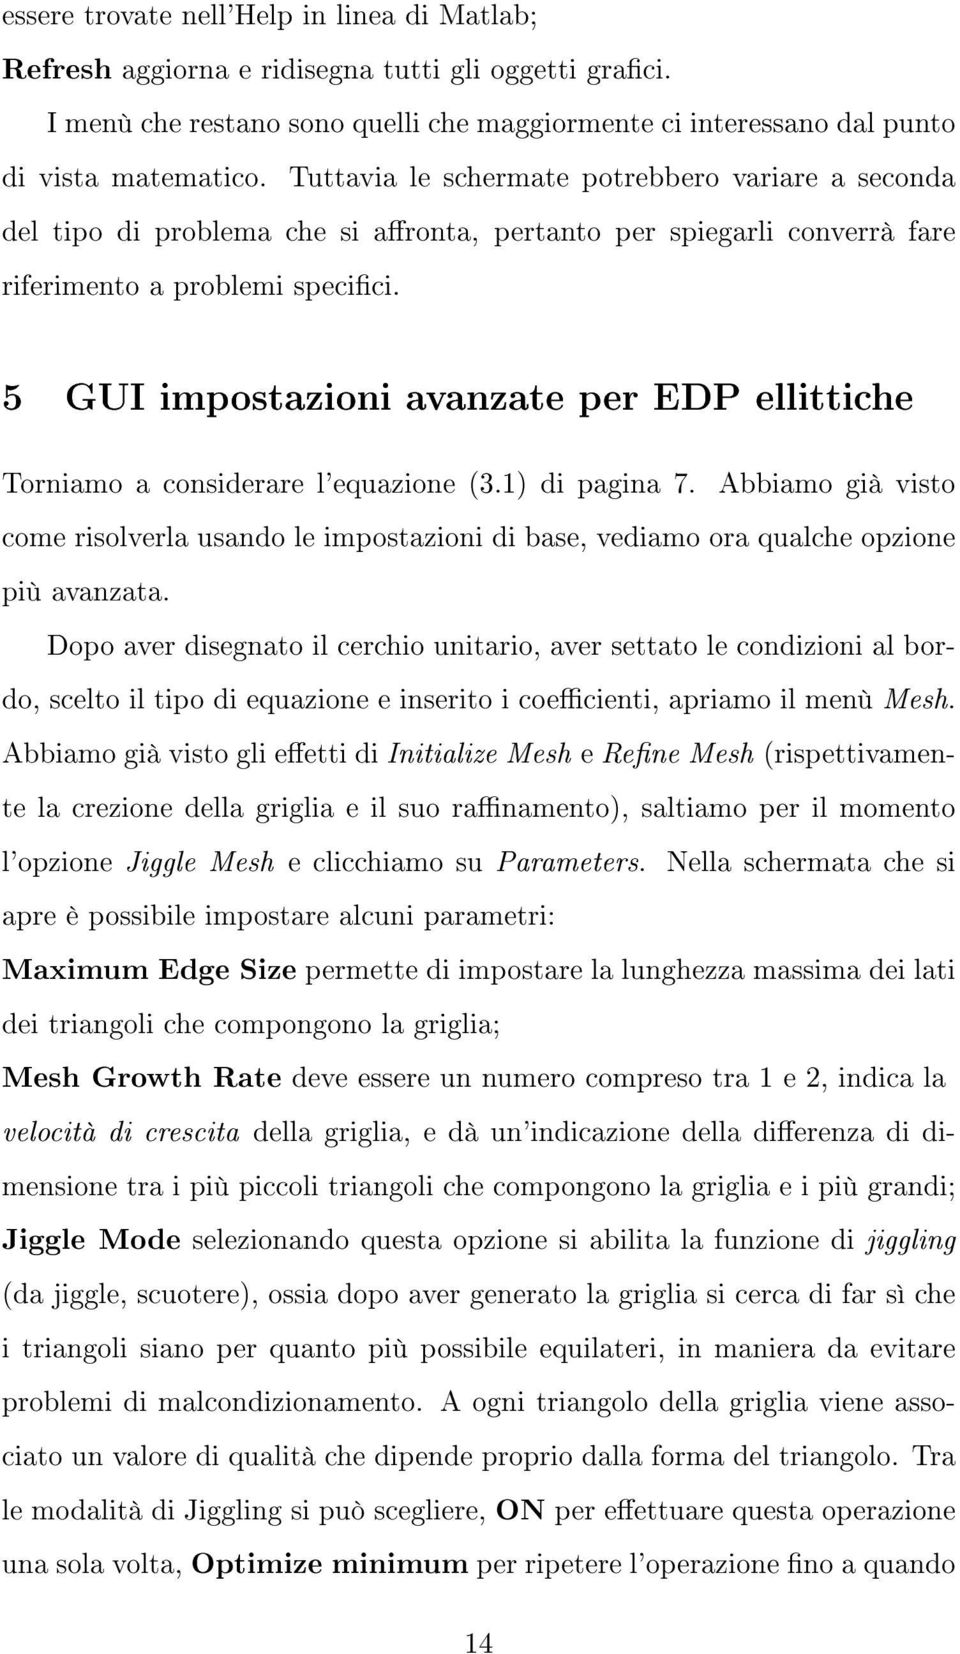 5 GUI impostazioni avanzate per EDP ellittiche Torniamo a considerare l'equazione (3.1) di pagina 7.